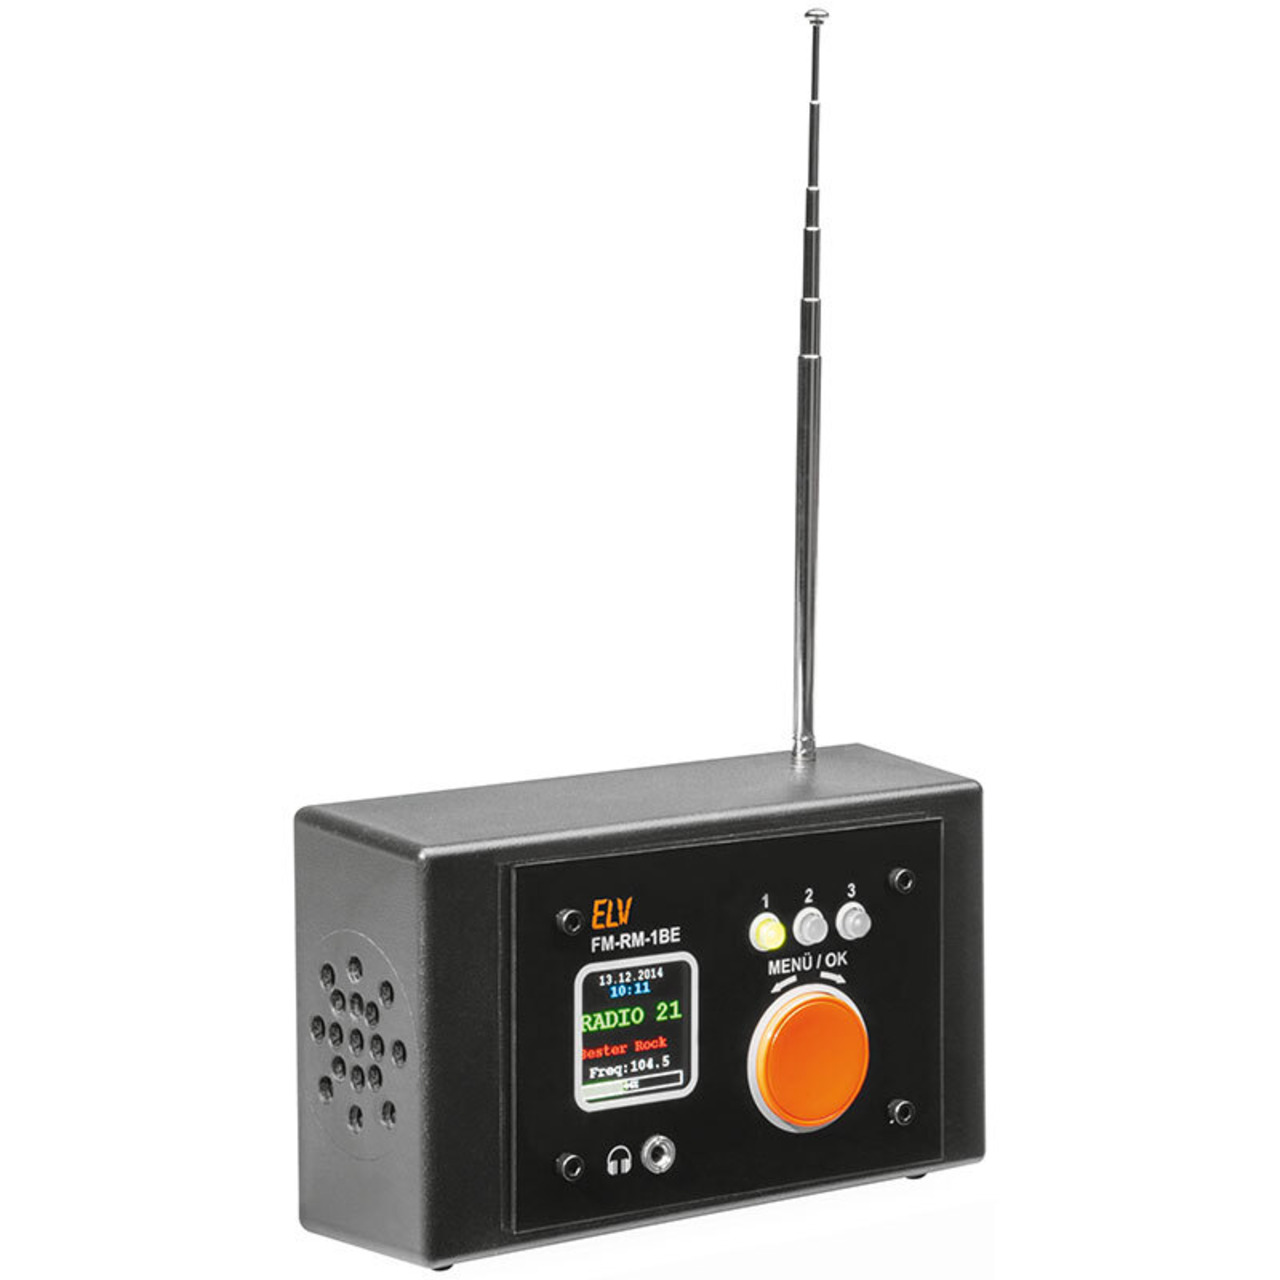 ELV Bausatz FM-Receiver Modul mit Si4705- FM-RM1 inkl- Bedien- und Anzeigeeinheit FM-RM1BE unter Baustze